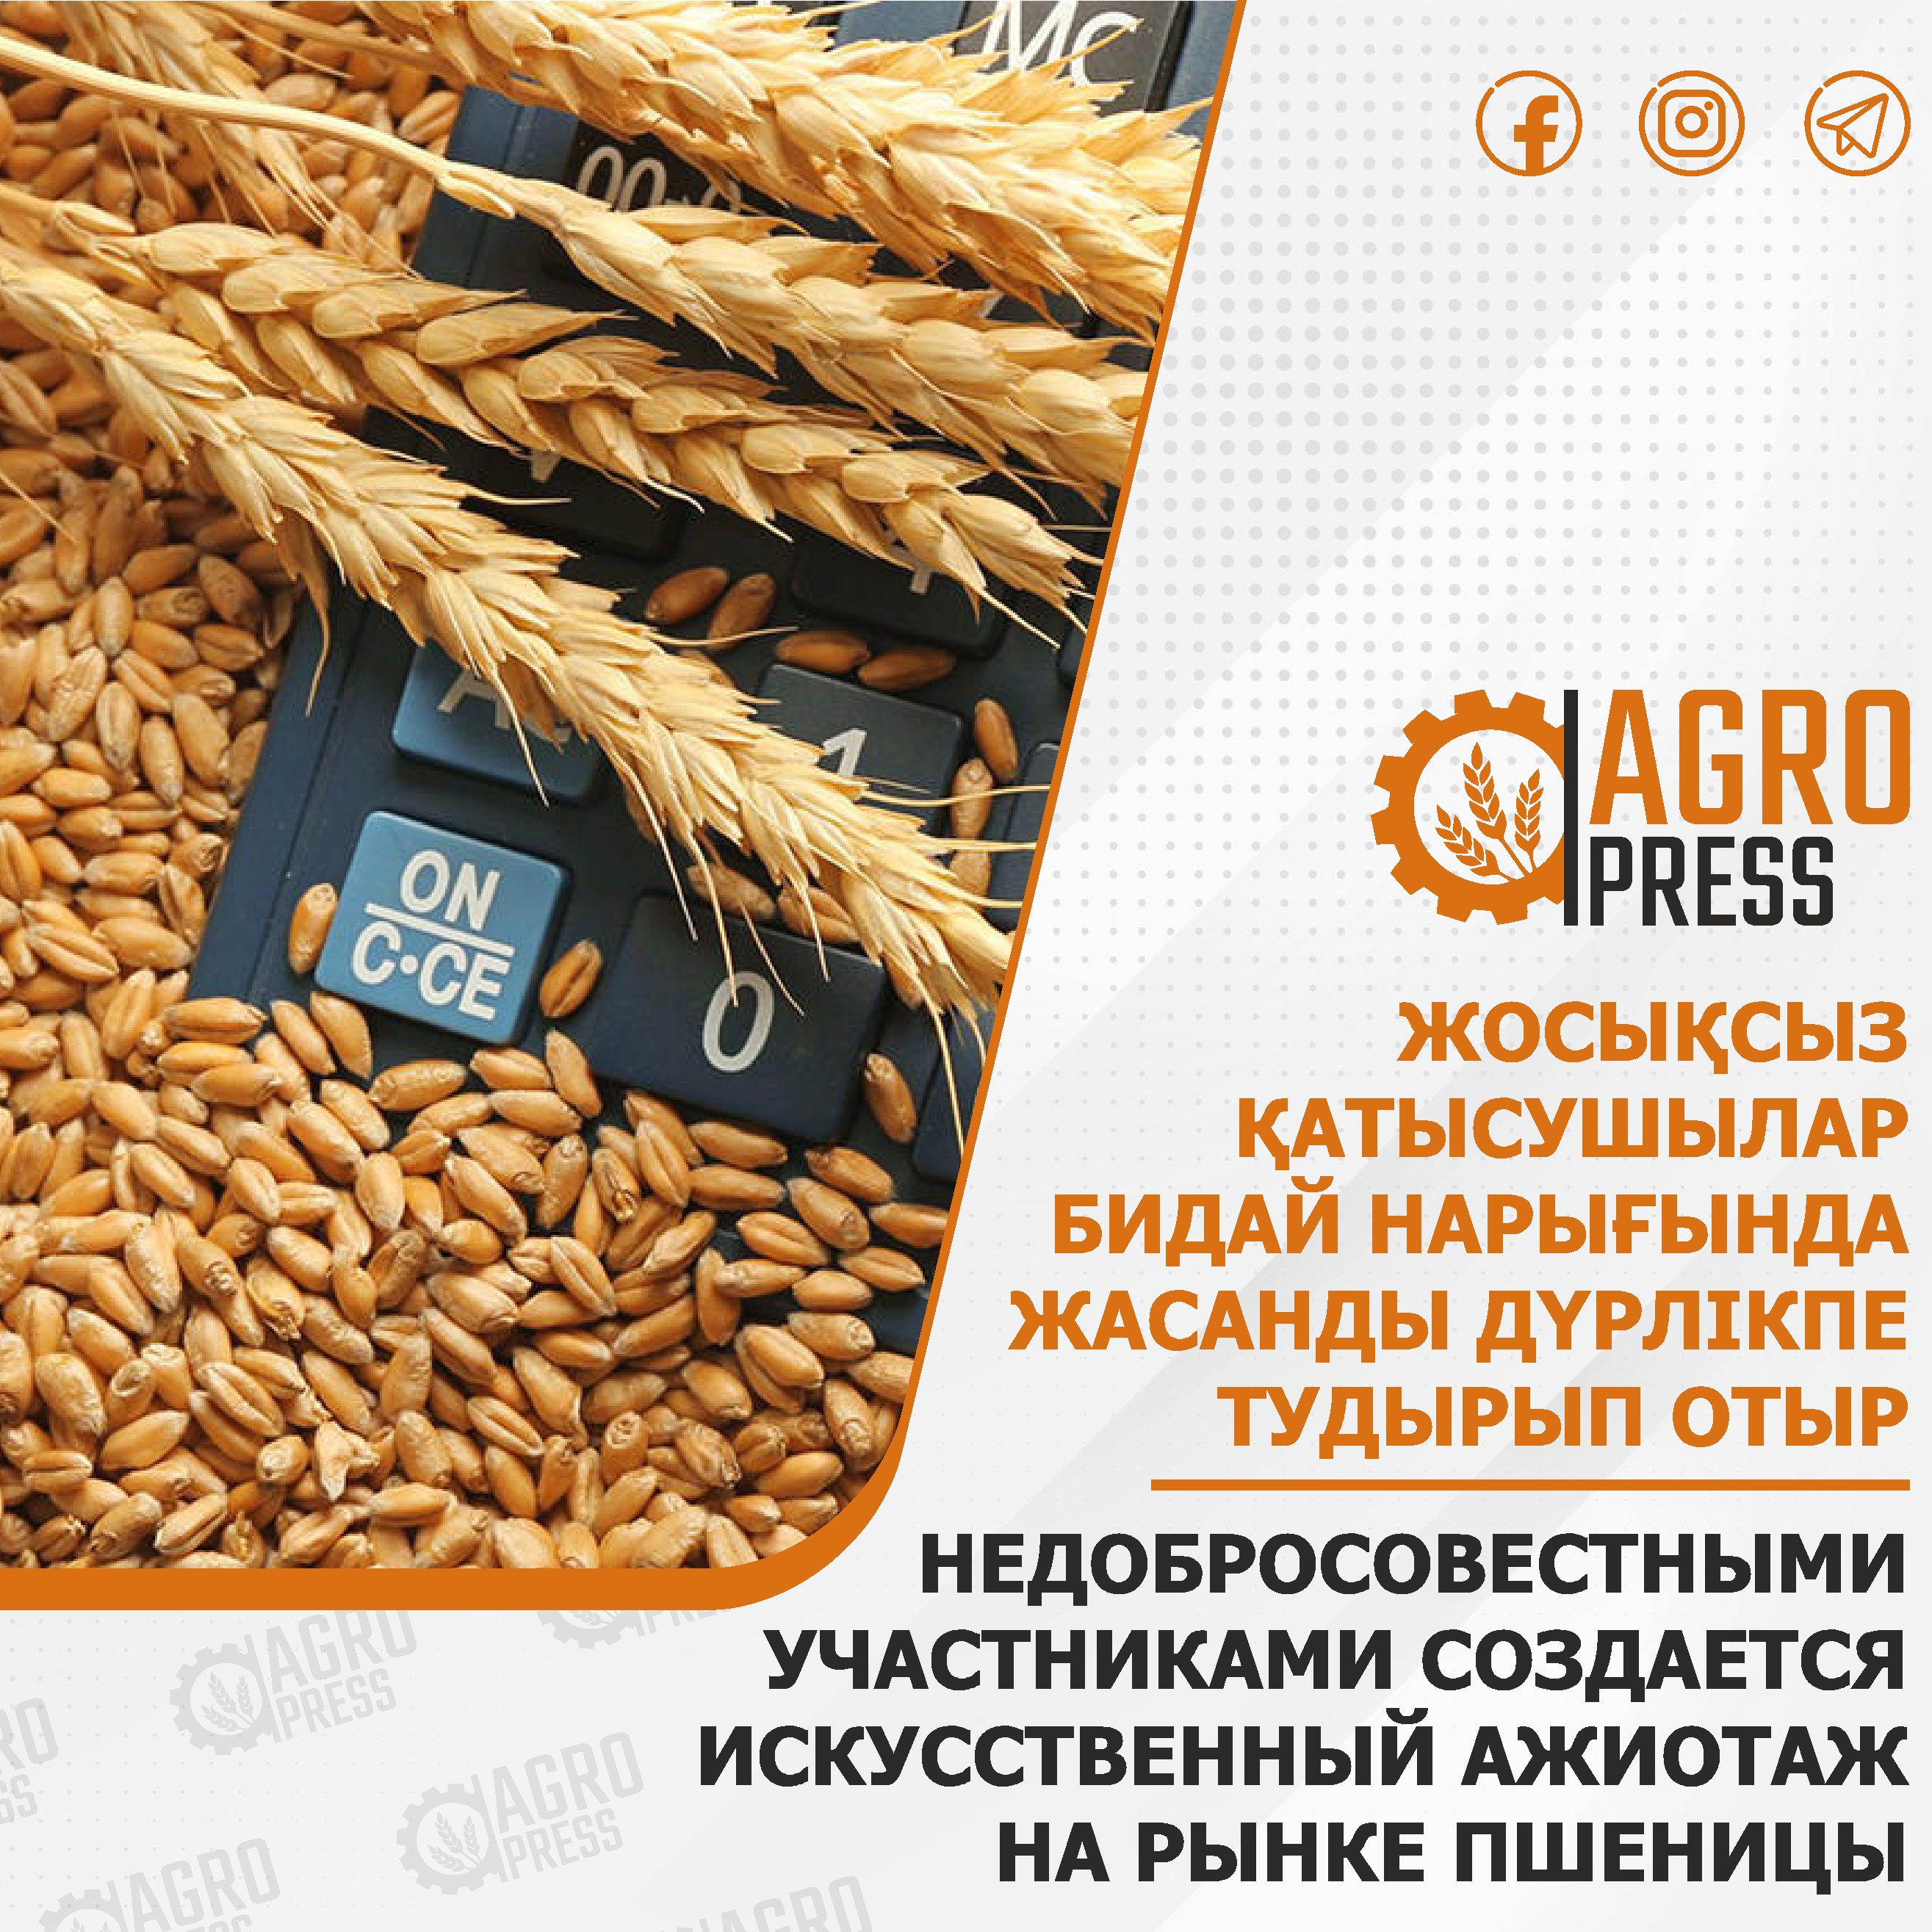 Недобросовестными участниками создается искусственный ажиотаж на рынке пшеницы